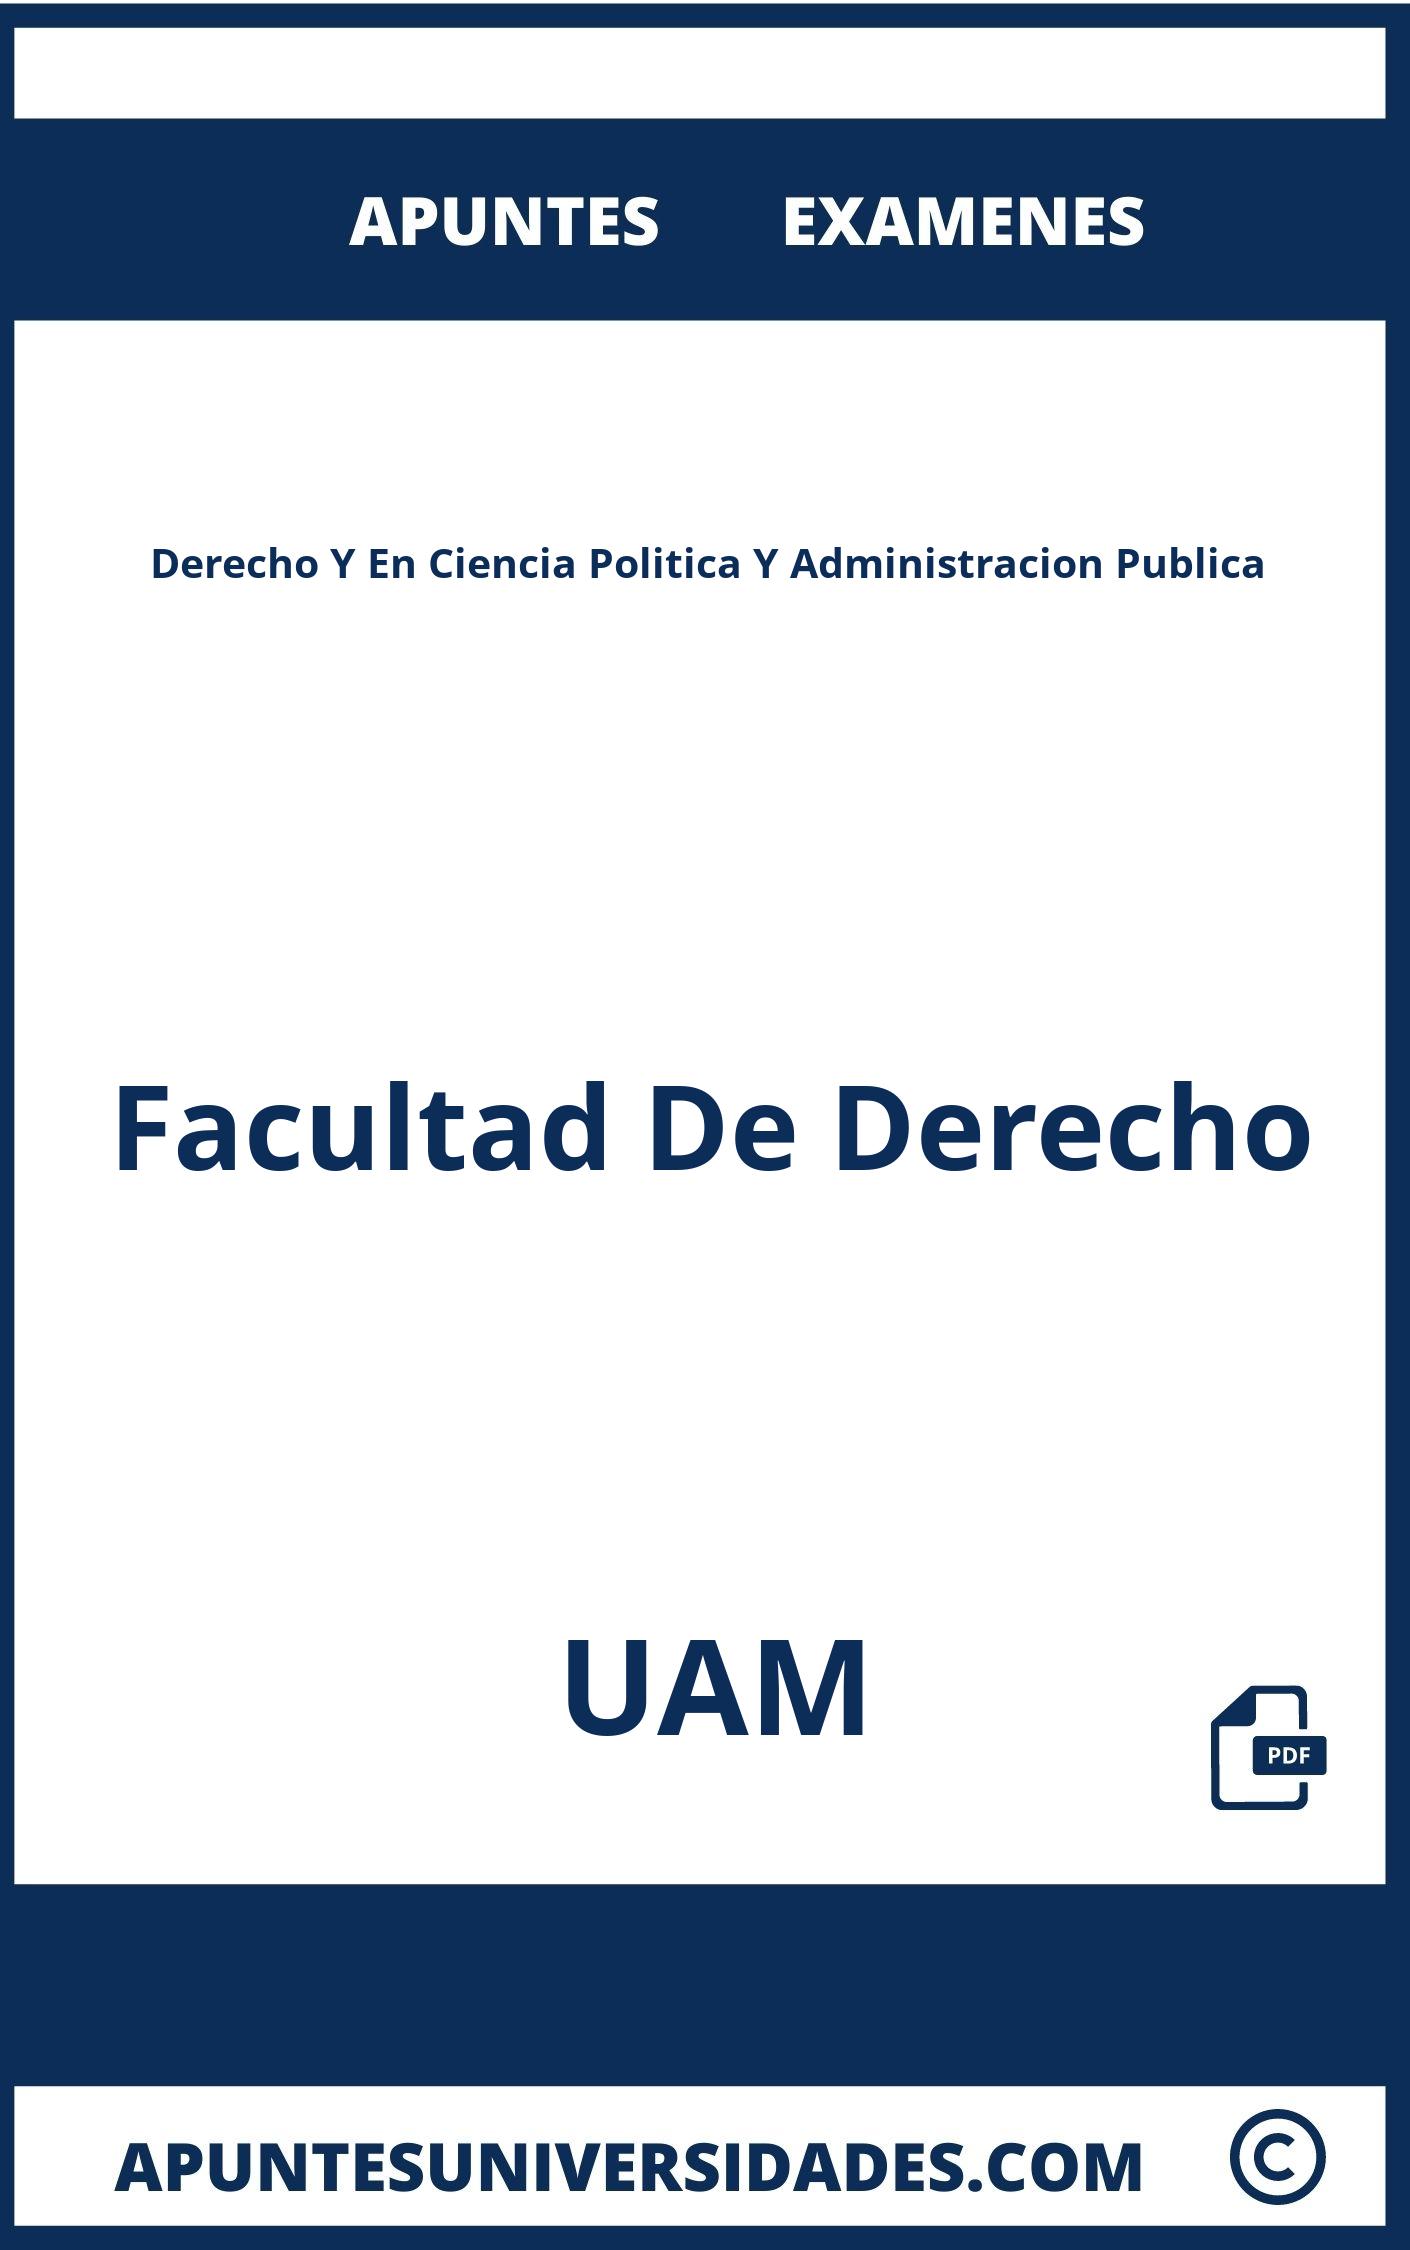 Examenes Apuntes Derecho Y En Ciencia Politica Y Administracion Publica UAM